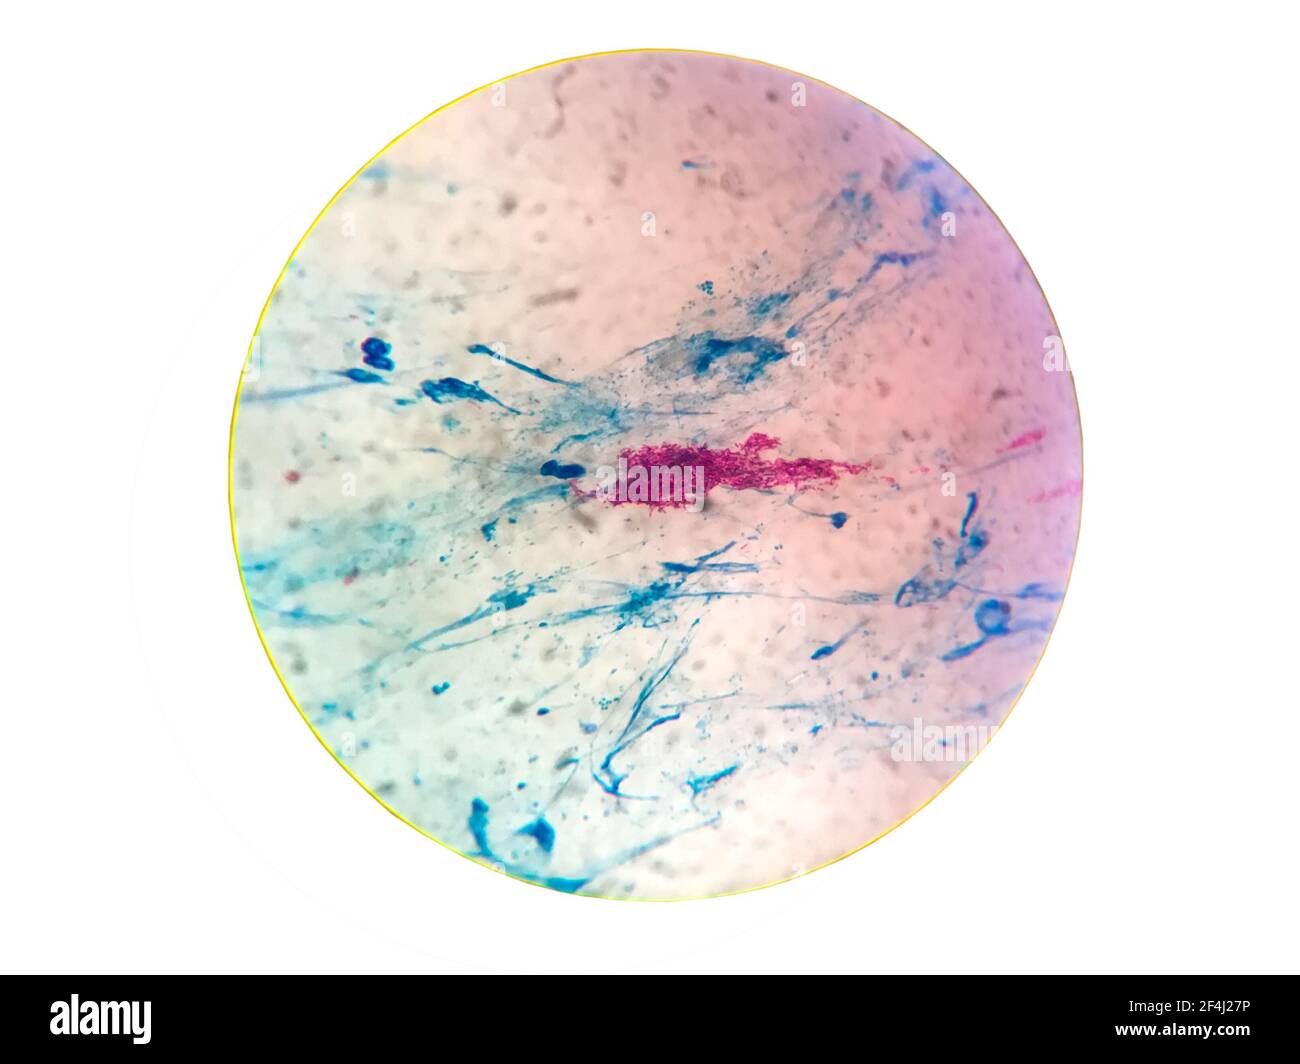 Nahaufnahme Gram Fleck Test zeigt Bakterienzellen von Tuberkulose Bakterien gram positiv auf Sputum isoliert auf weißem Hintergrund und Rauschen .gespeichert mit c Stockfoto